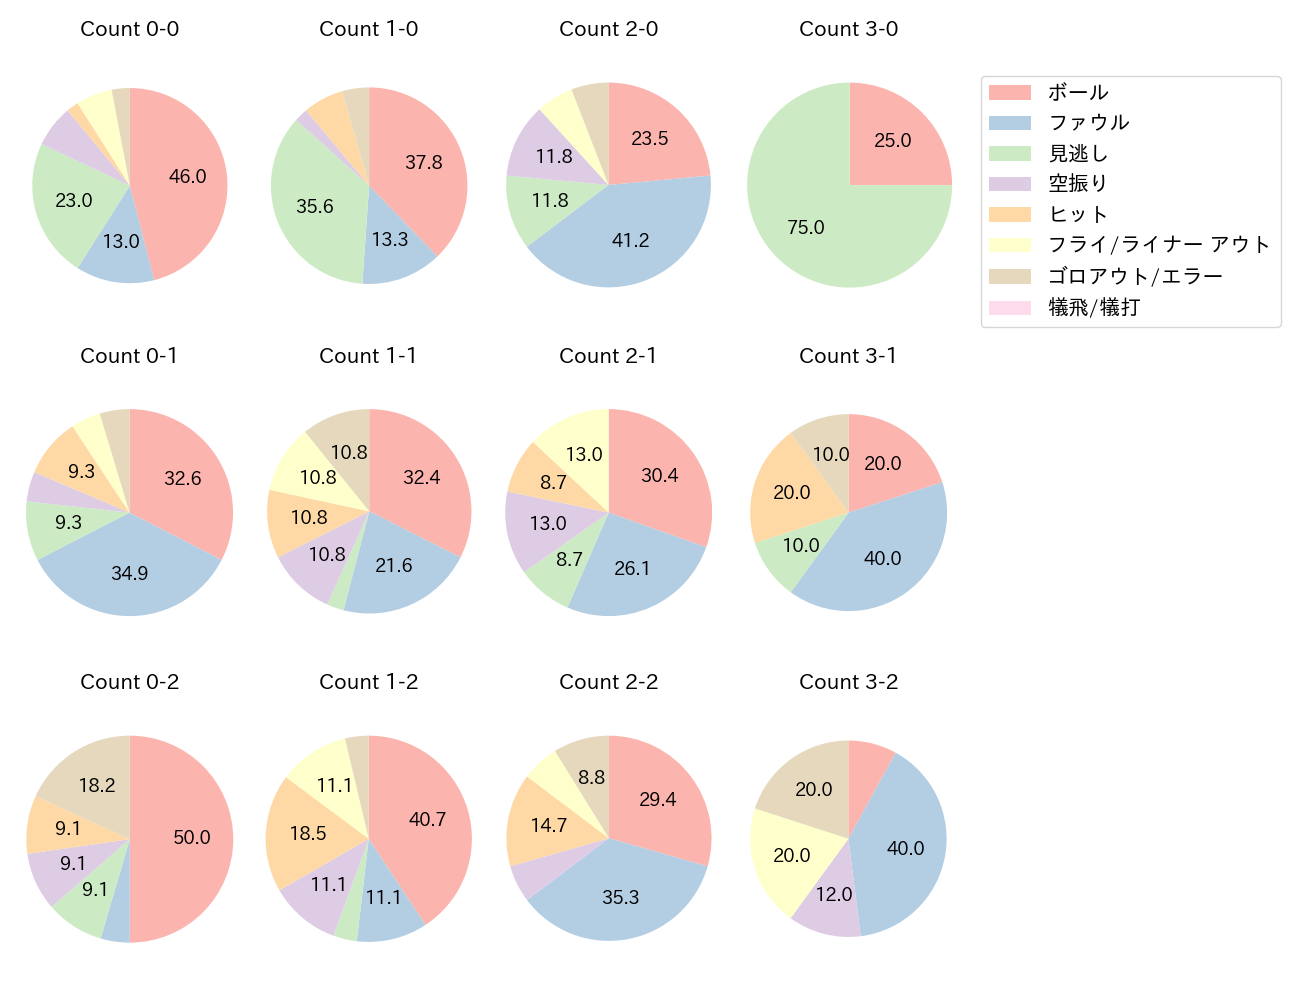 牧 秀悟の球数分布(2022年8月)